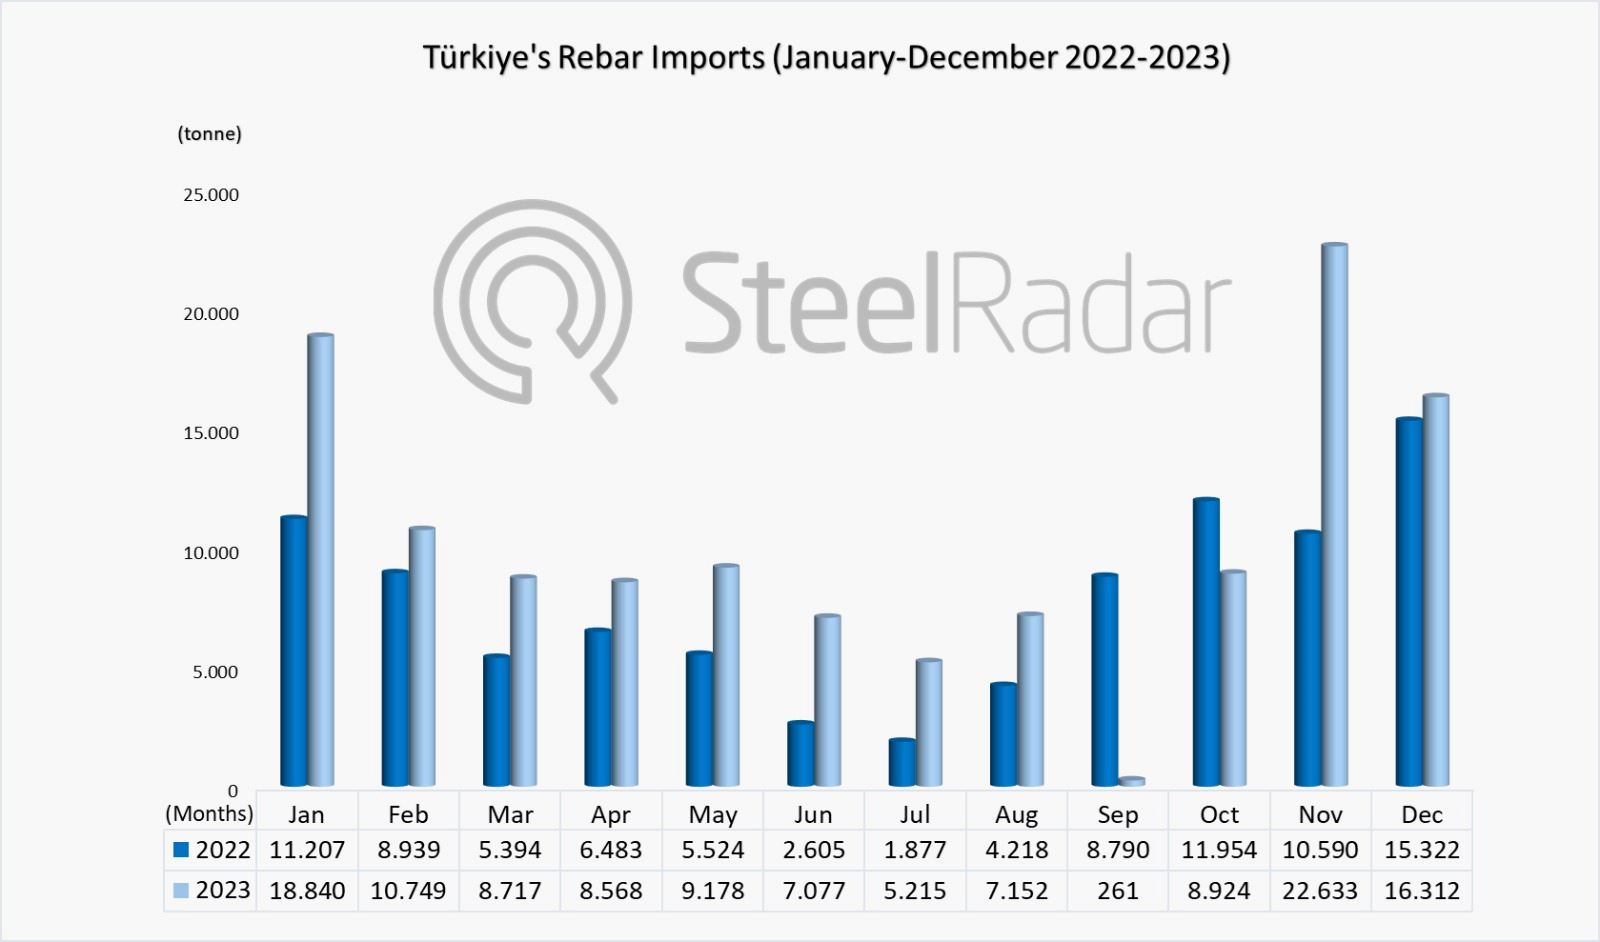 Türkiye's rebar imports increased by 33.7 per cent in 2023